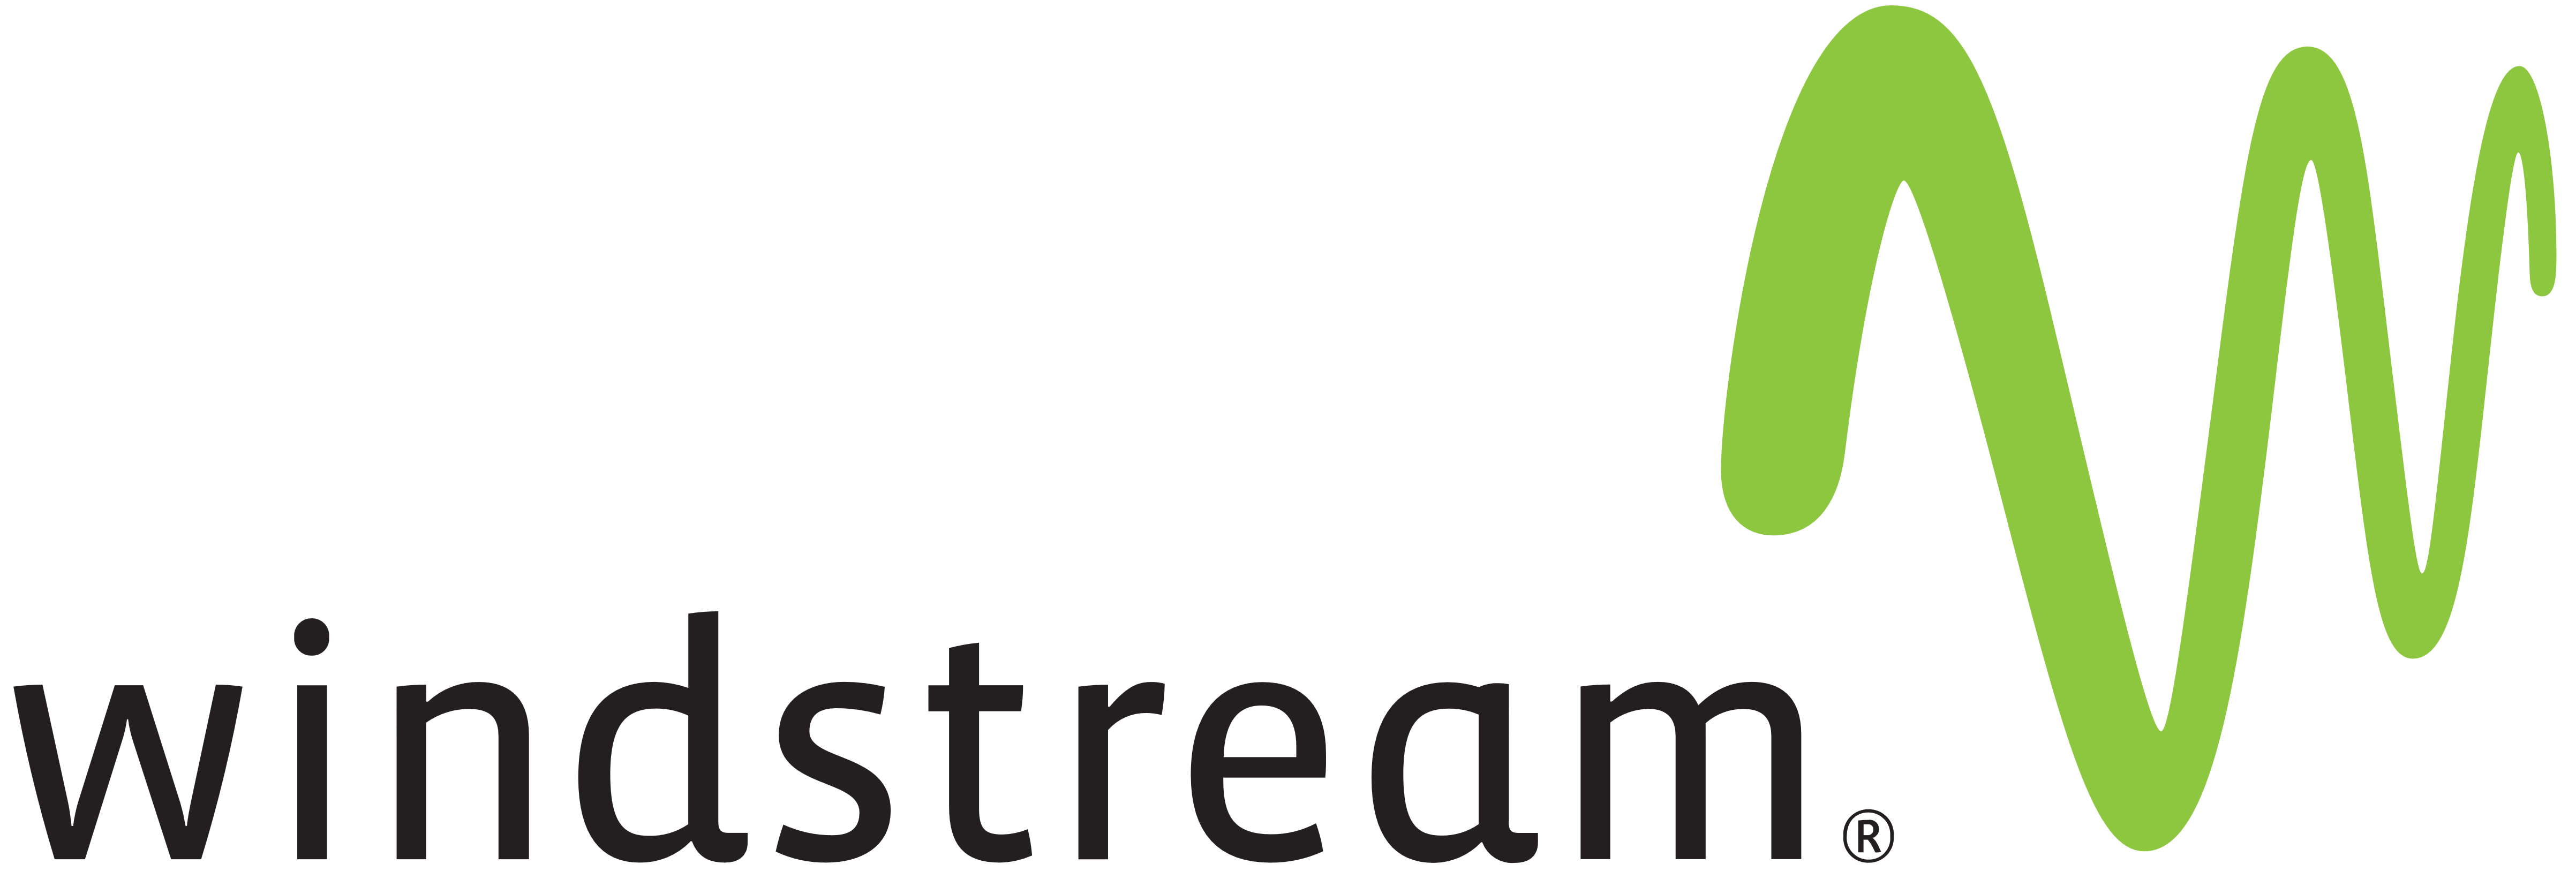 Windstream – Logos Download